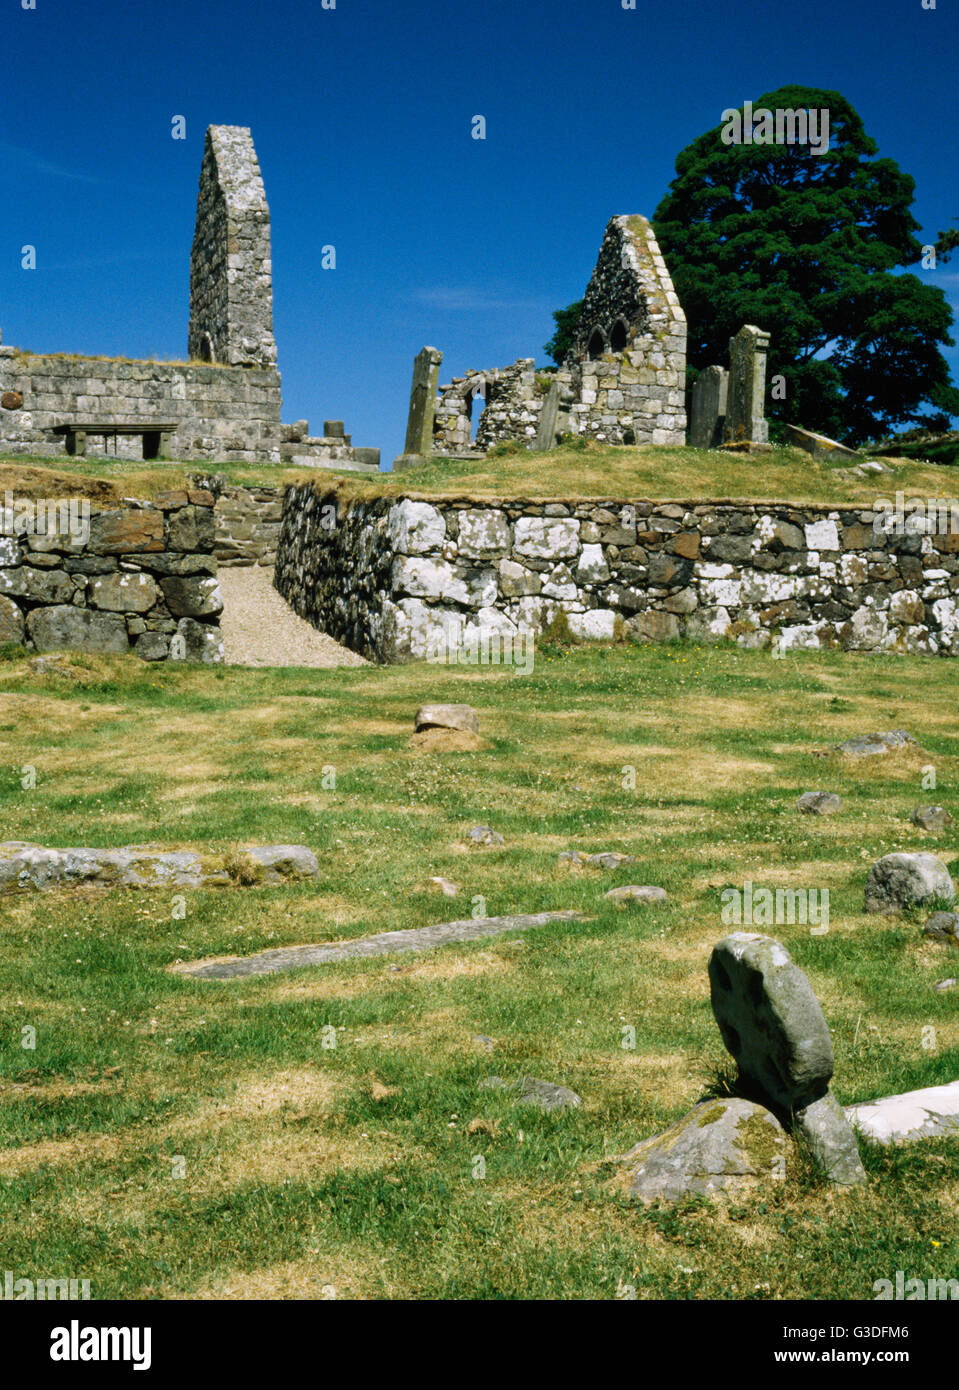 Las ruinas de la iglesia de St Blane, Isla de Bute, Escocia, Reino Unido. C12th iglesia románica dedicada a la C6th saint que había aquí un monasterio. Foto de stock